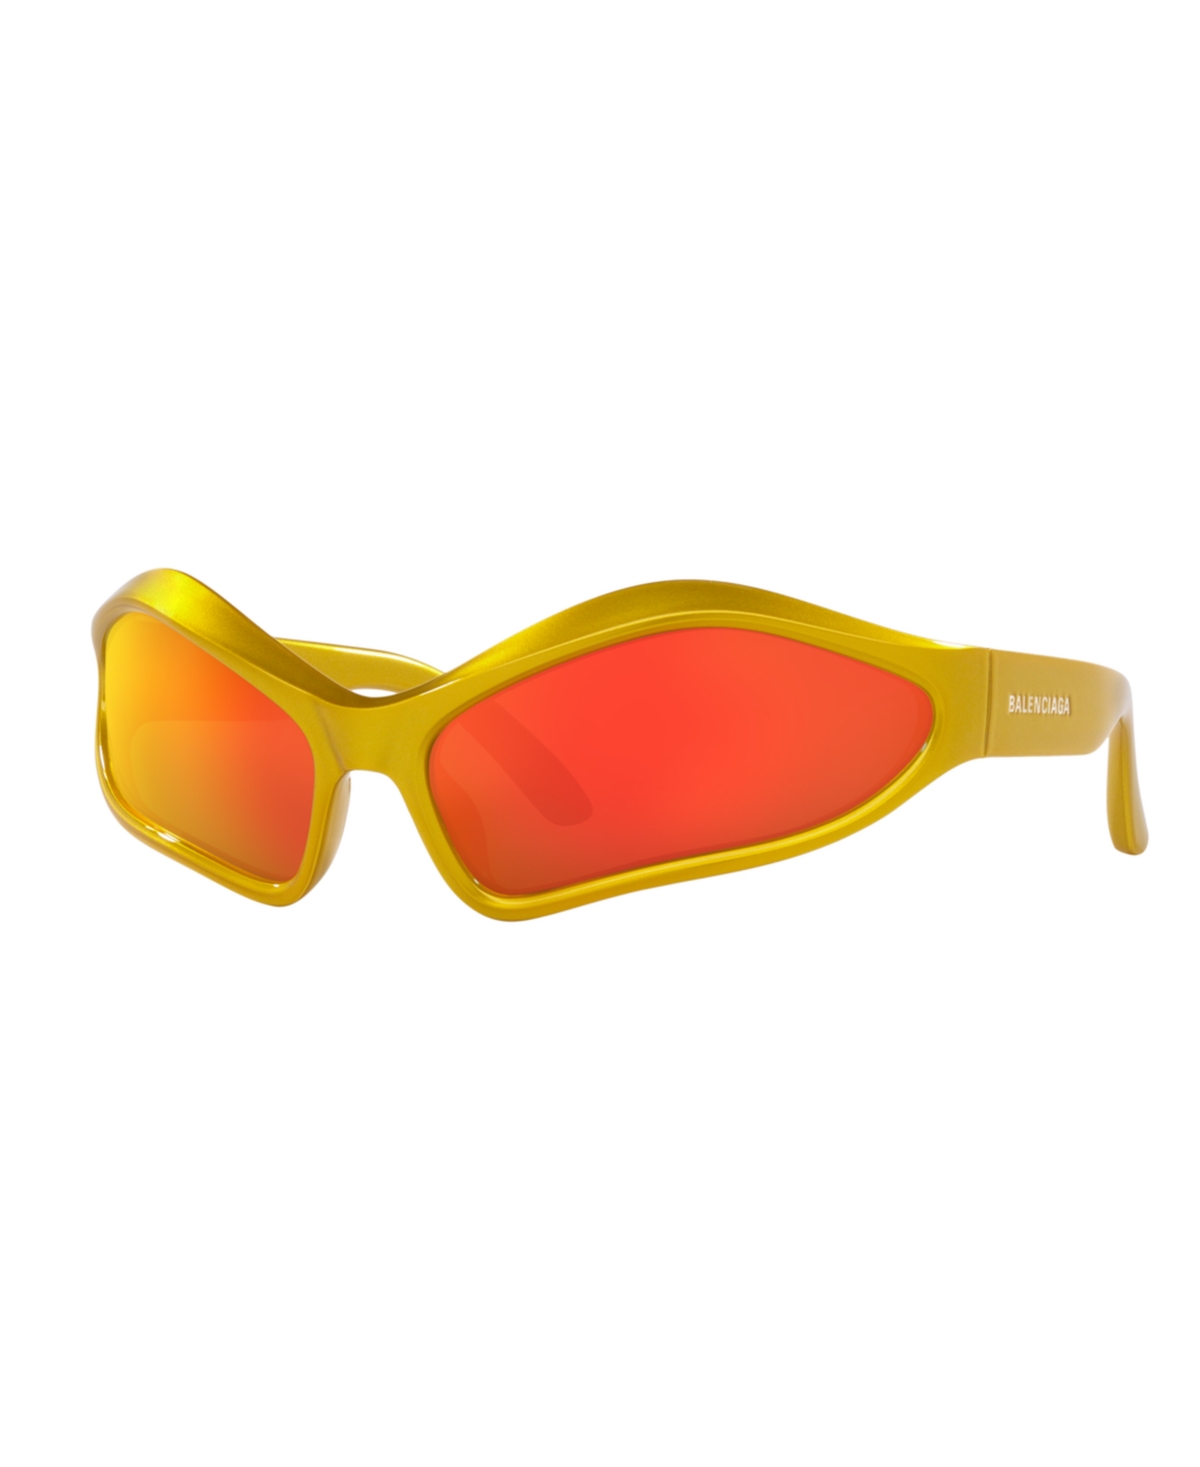 Men's and Women's Sunglasses, BB0314S - Yellow